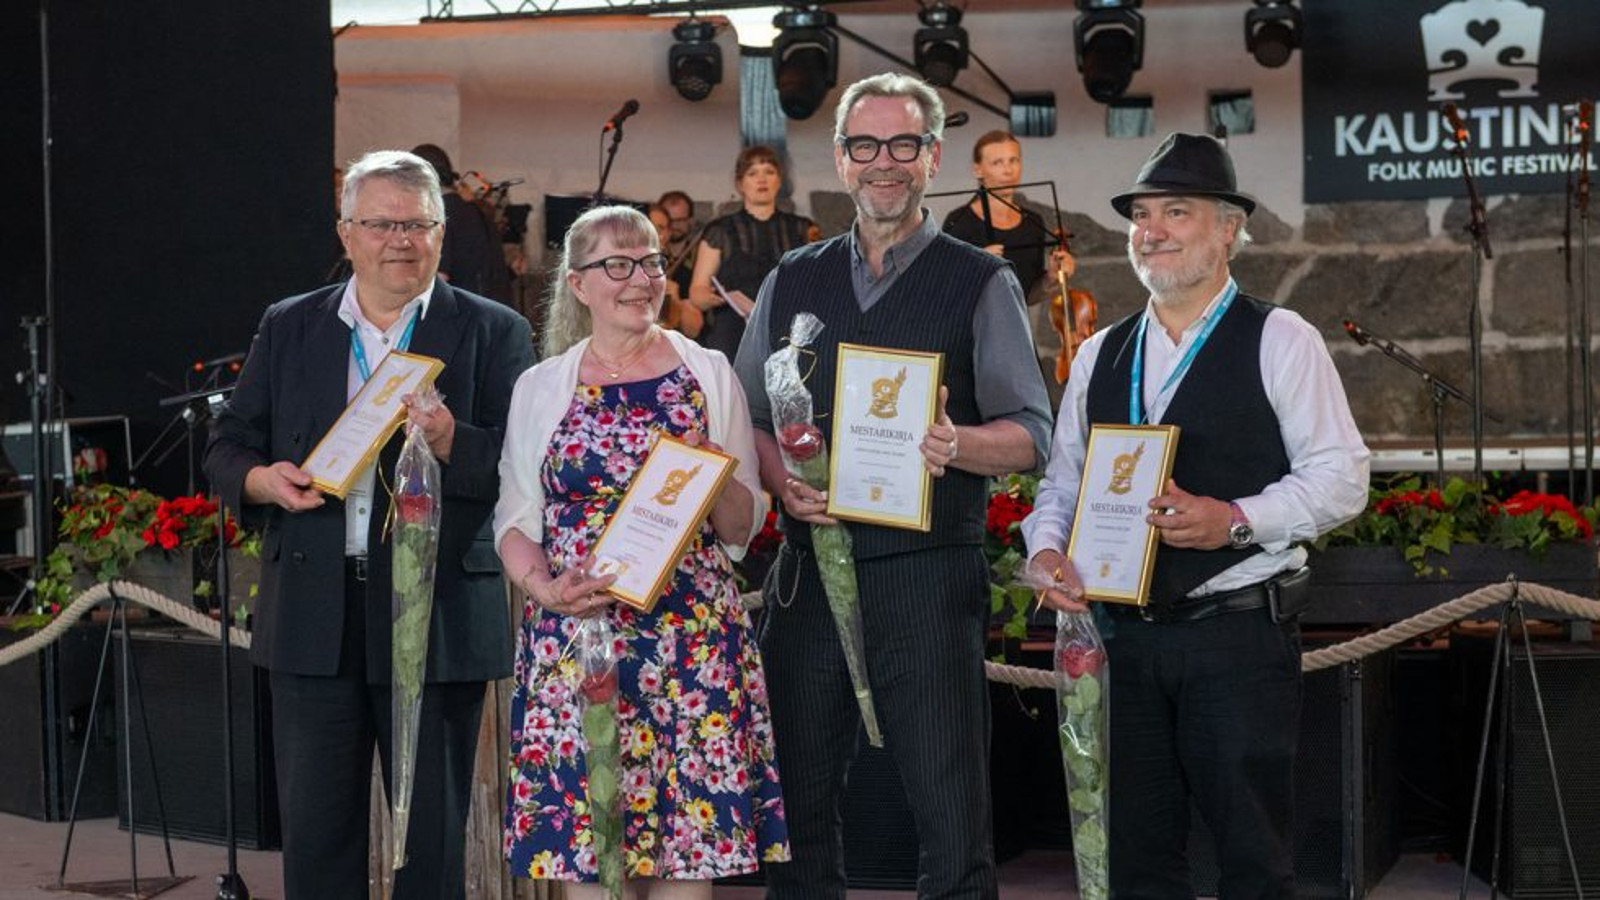 Kuvassa ovat vierekkäin pelimannit Aimo Hentinen, Anita Kaustinen, Juhani Lautamaja ja Patrik WEckman kädessään kunniakirja ja onnitteluruusu.